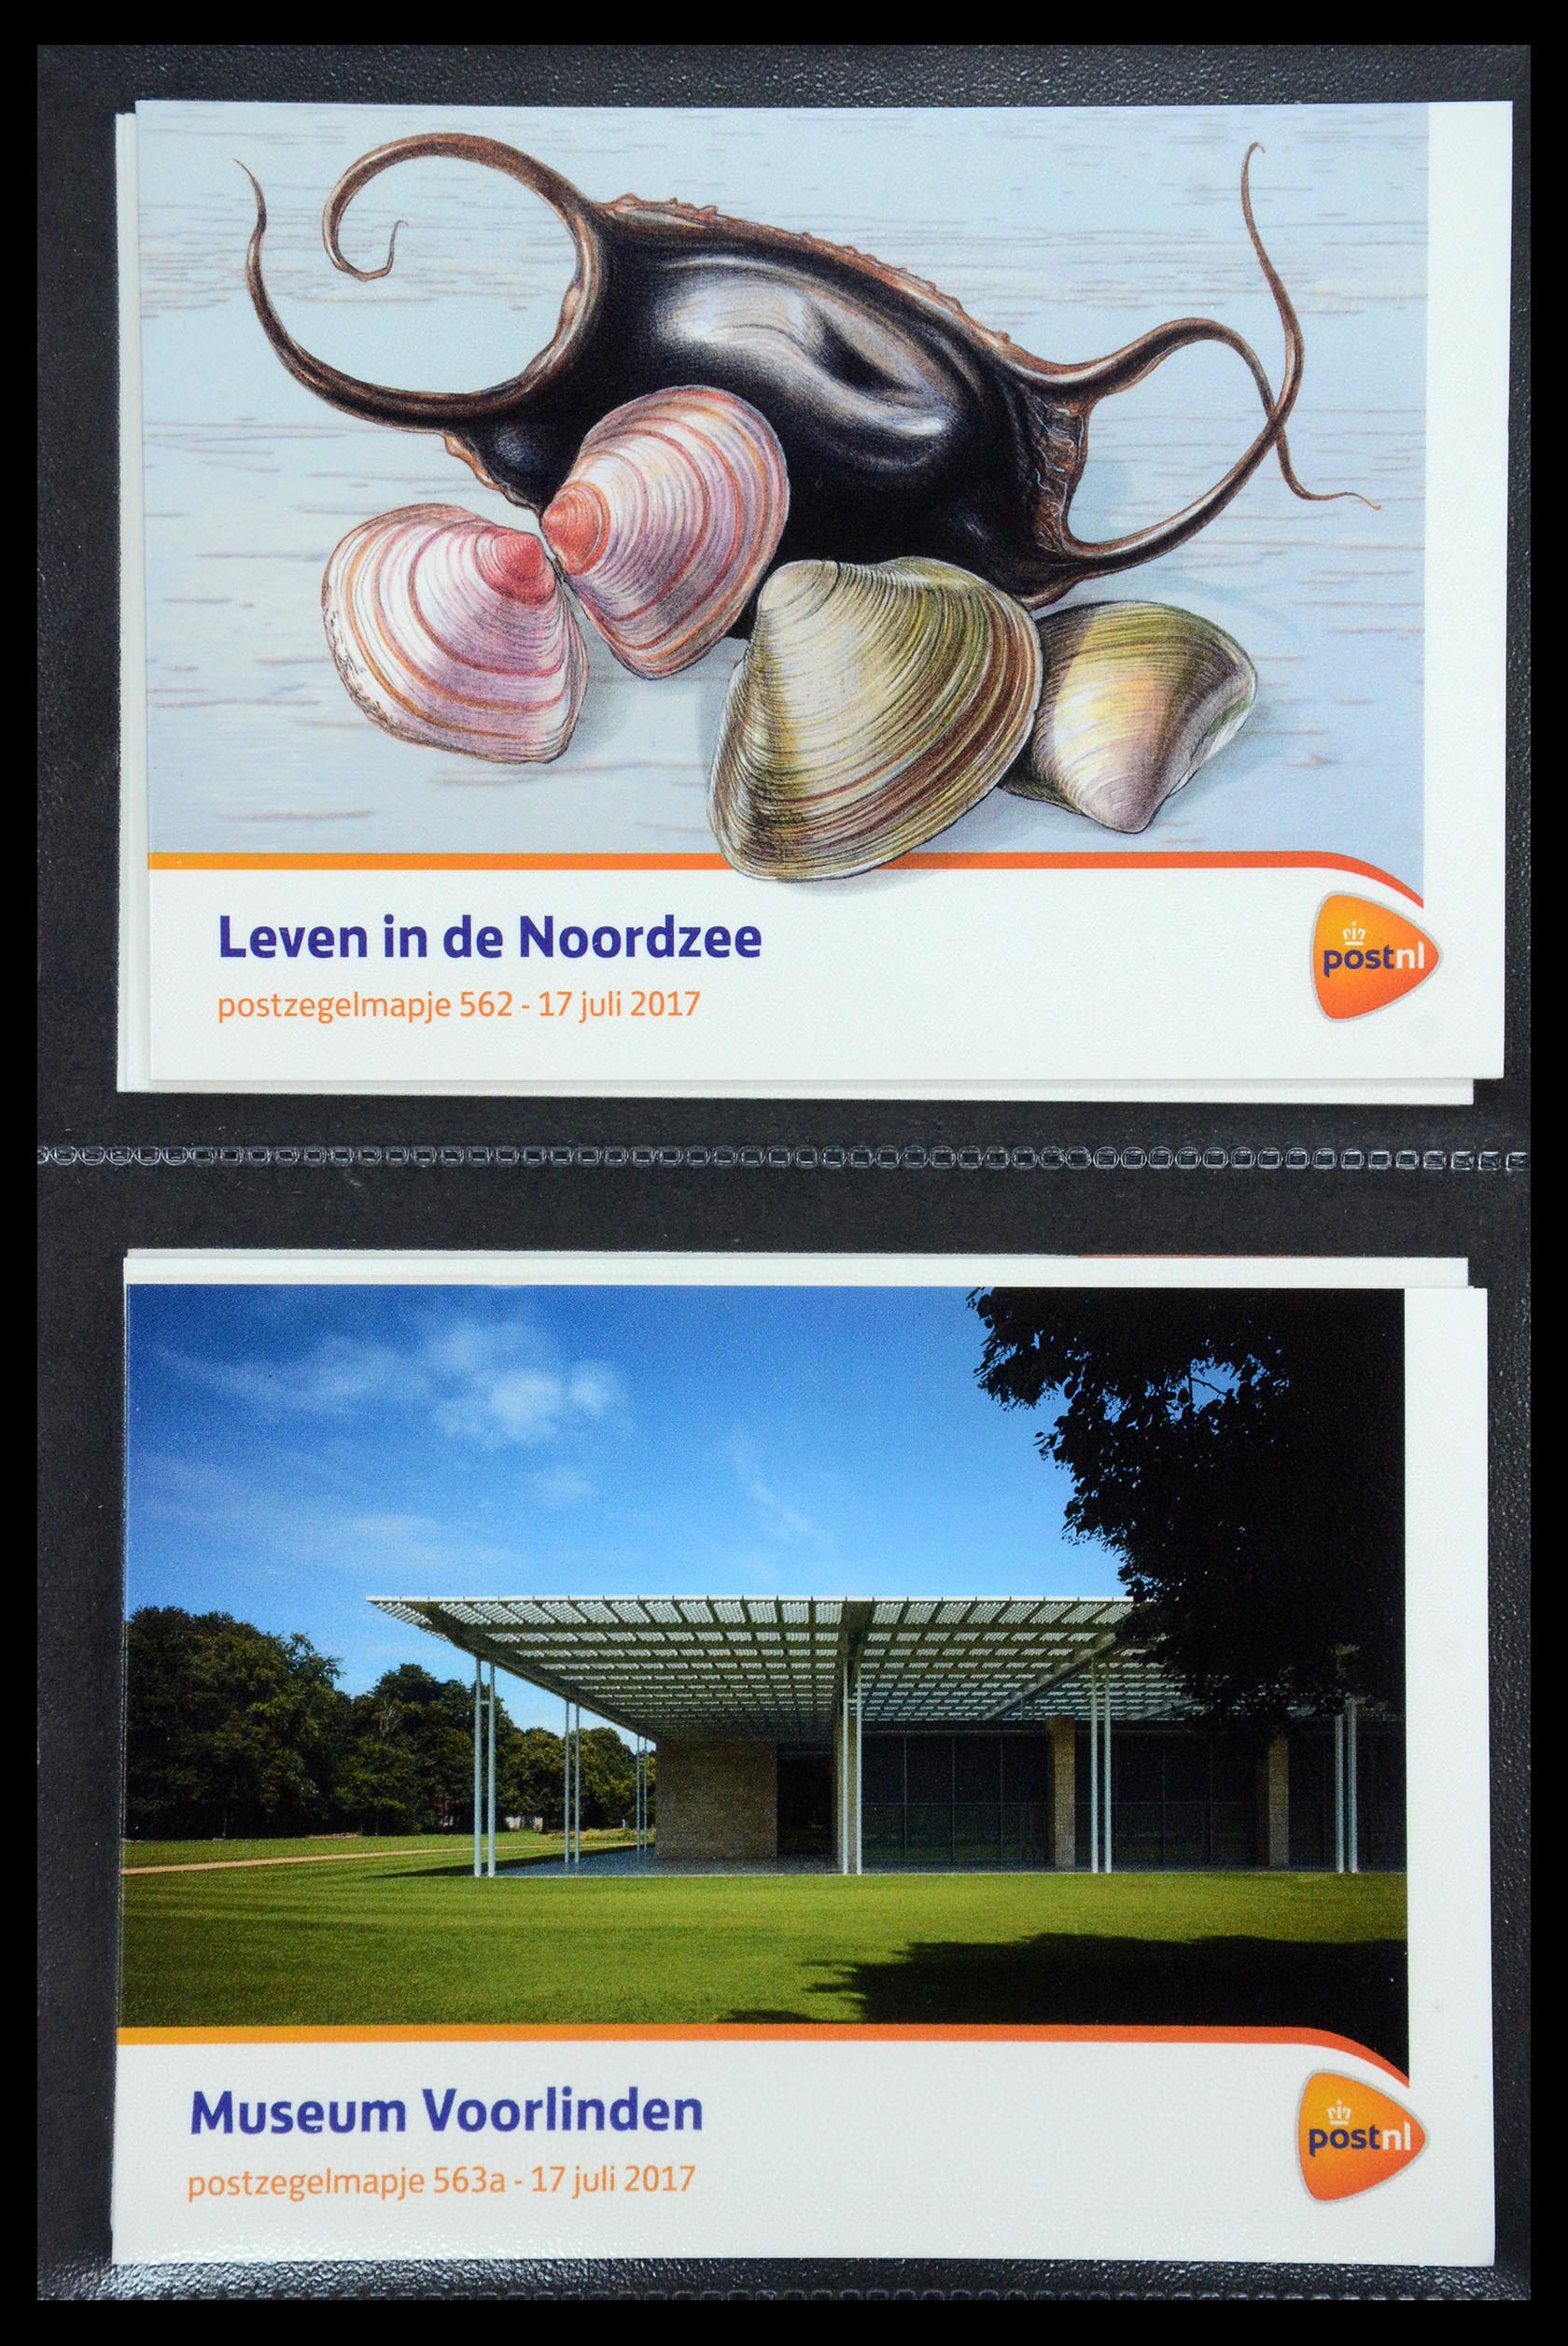 35187 337 - Stamp Collection 35187 Netherlands PTT presentation packs 1982-2019!